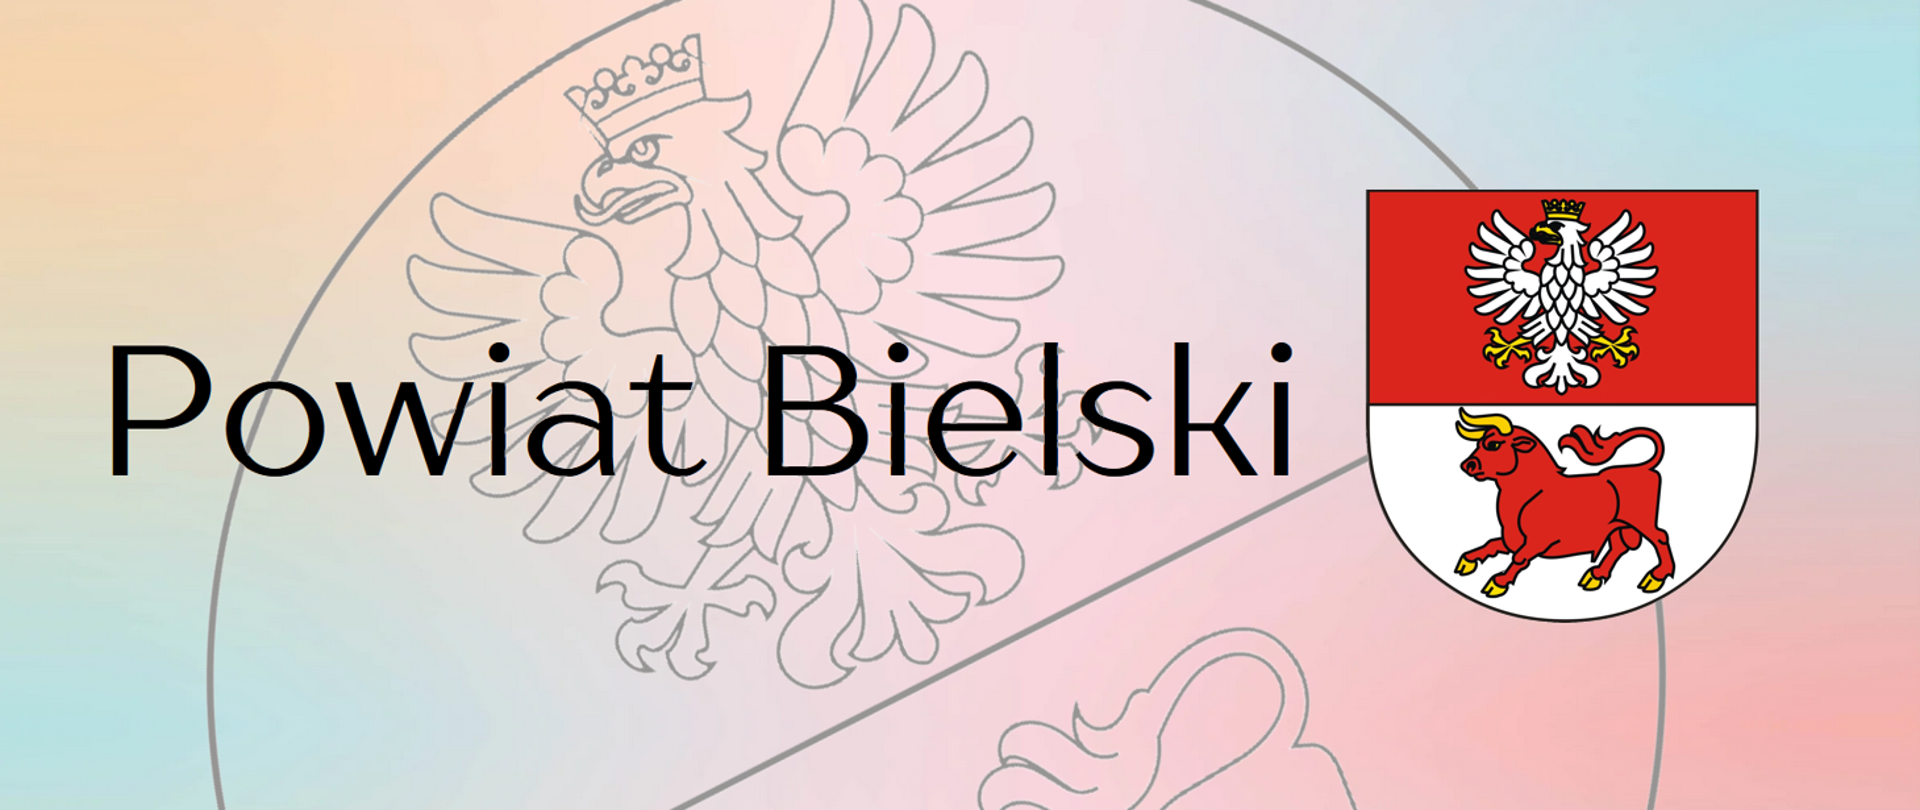 Powiat Bielski 